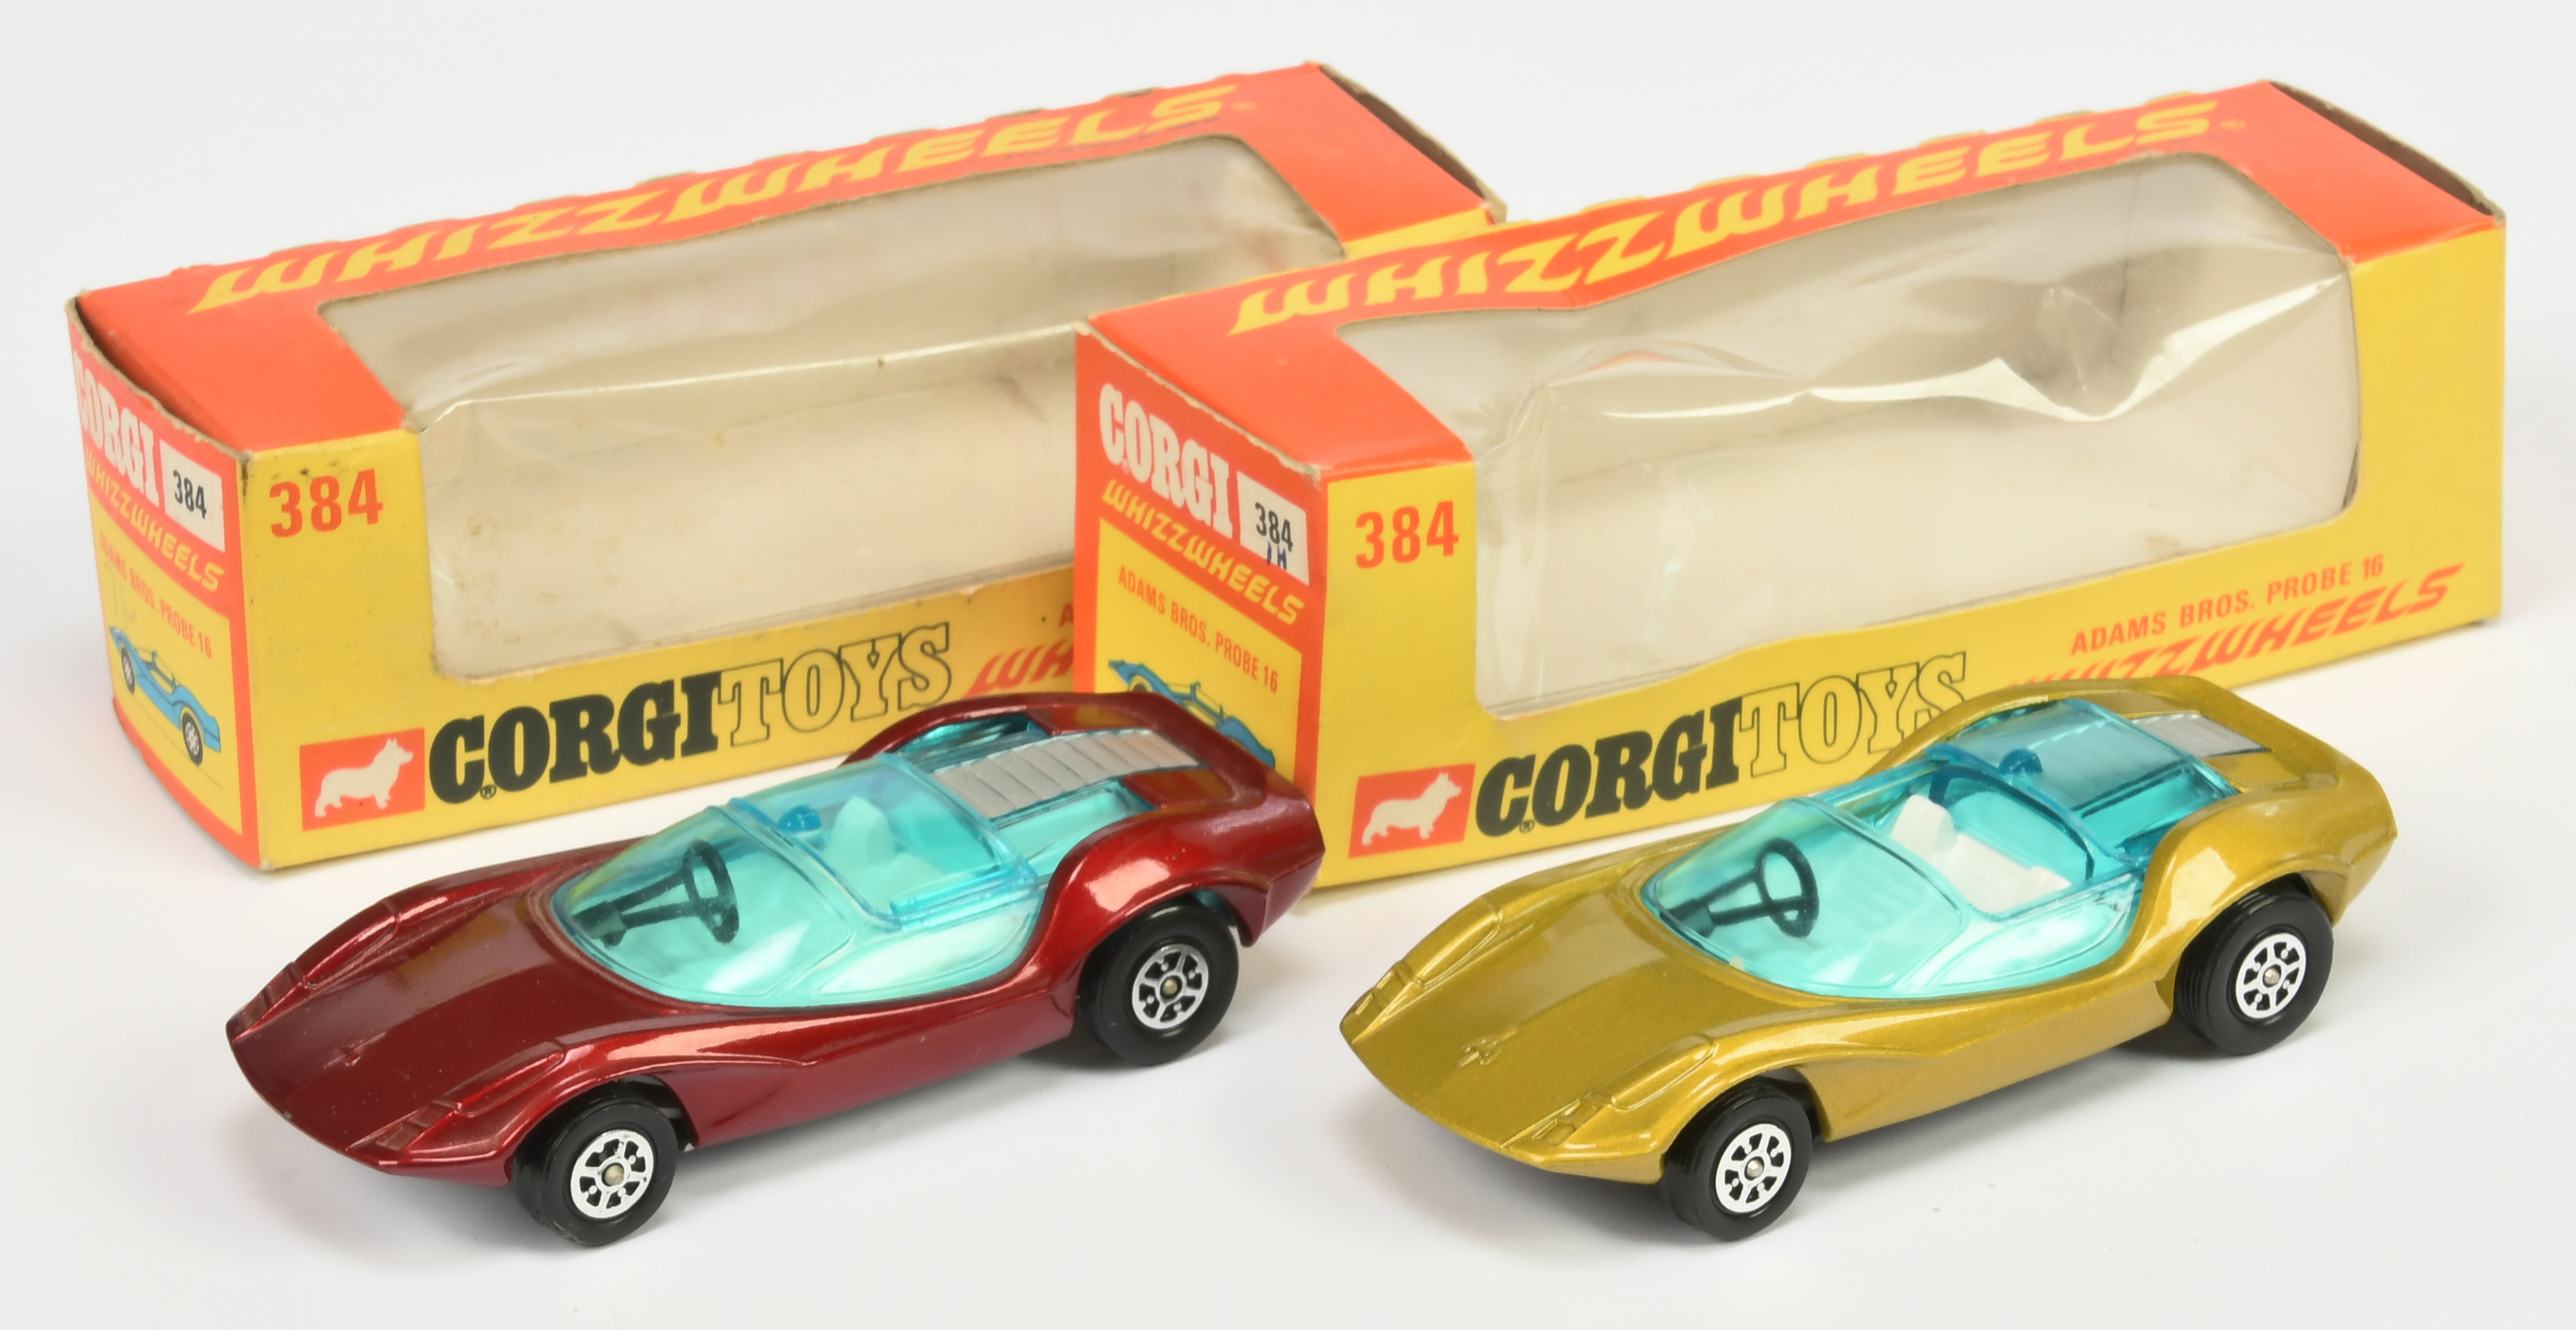 Corgi Toys Whizzwheels 384 Adams Bros Probe 16 A Pair - (1) Metallic Gold-Green, white interior a...